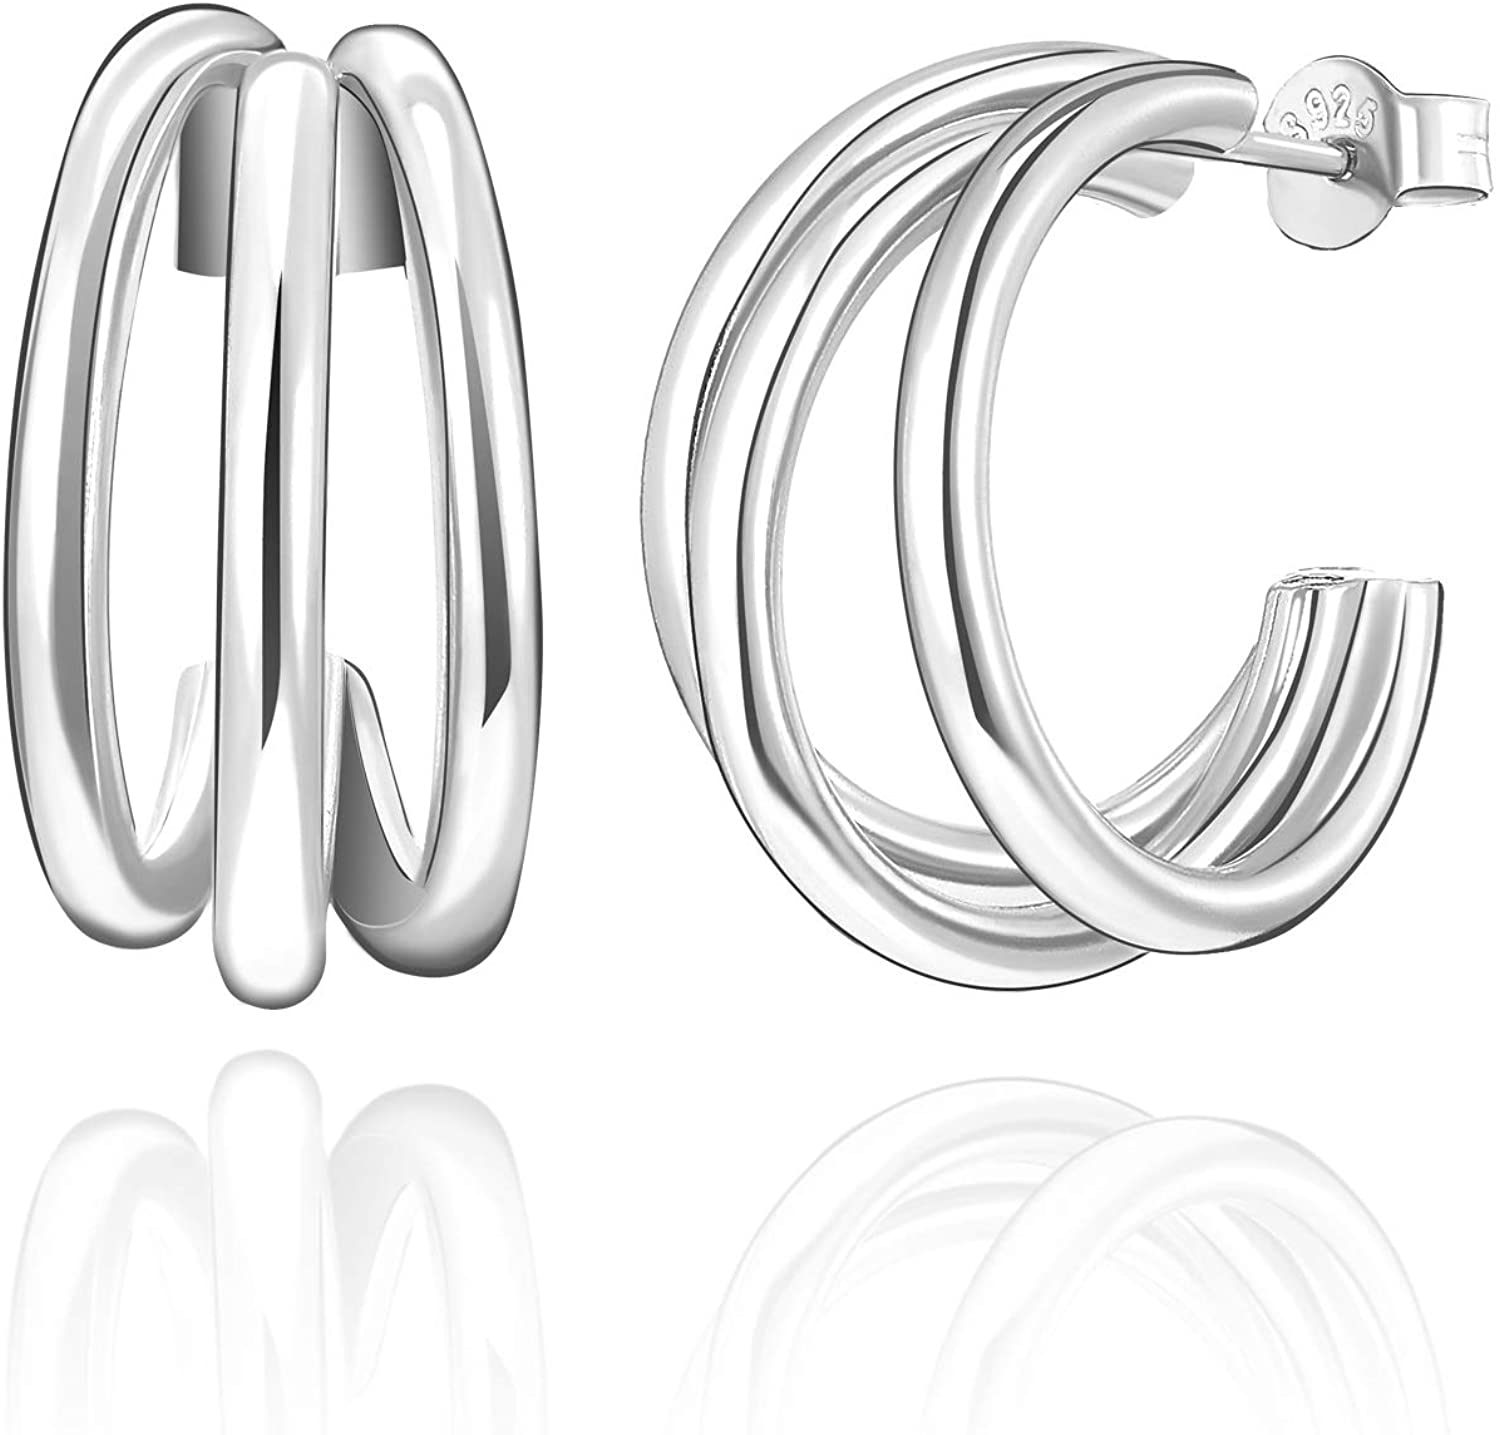 SWEETV 925 Sterling Silver Triple Hoop Earrings for Women 20MM $10.99